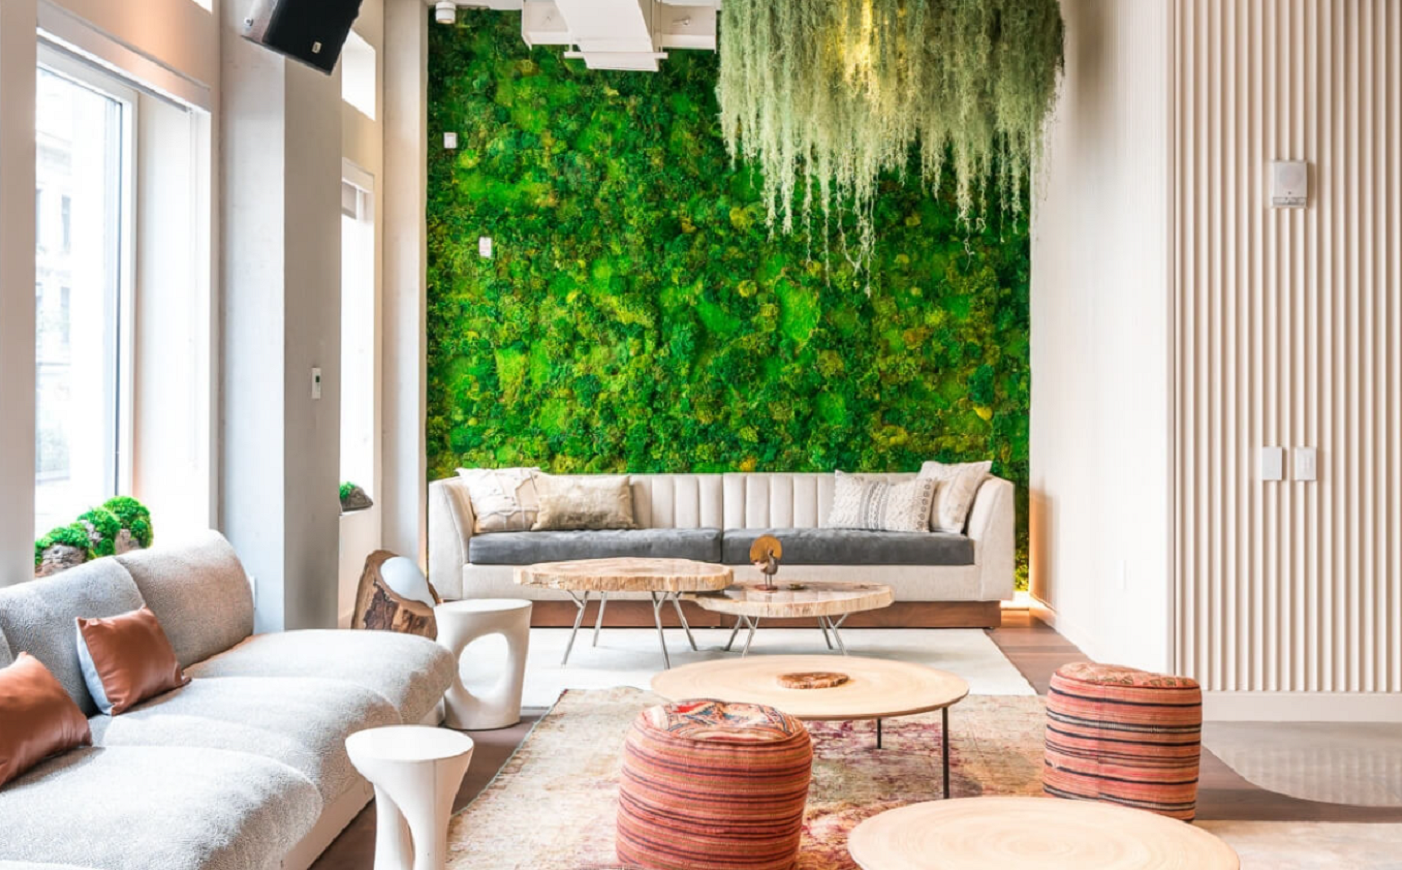 3 Idées de Jardins Verticaux - Un joli Mur de Plantes dans le Salon